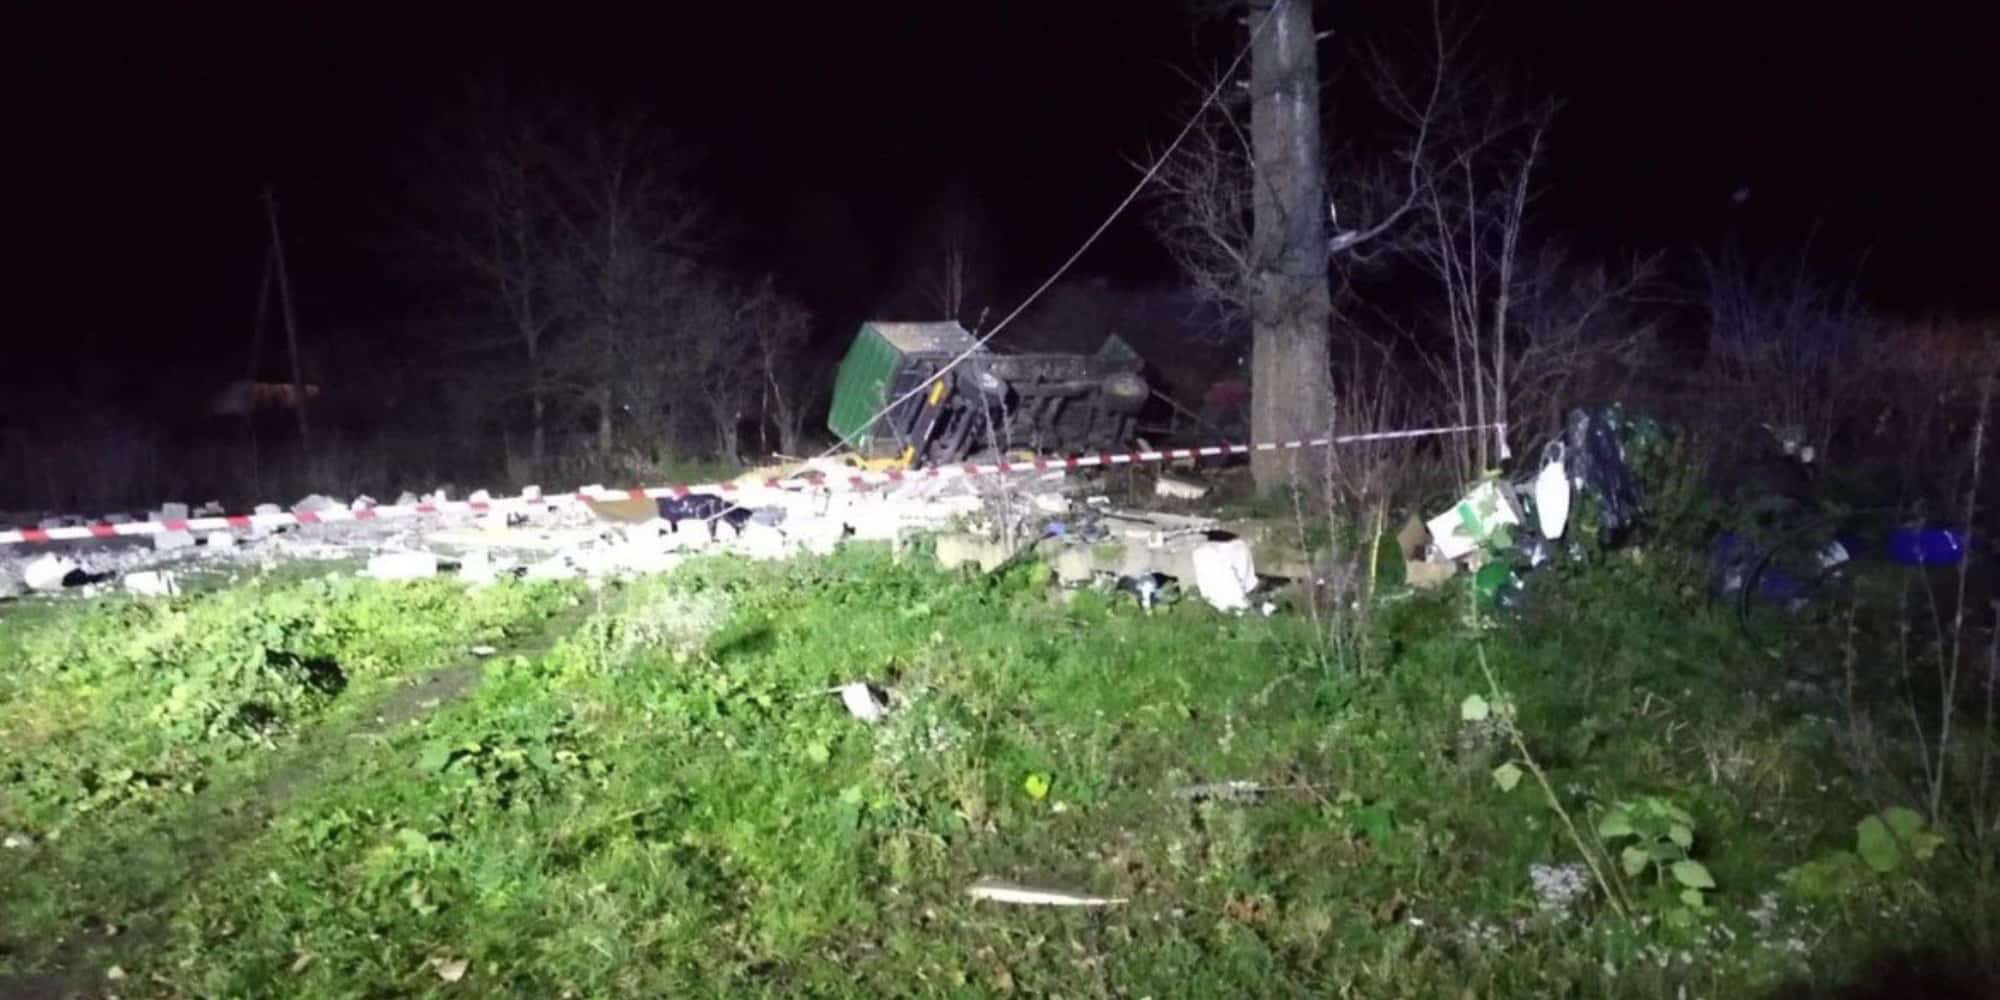 Εικόνα από το χωριό στην Πολωνία, όπου φαίνεται πως χτύπησε ρωσικός πύραυλος